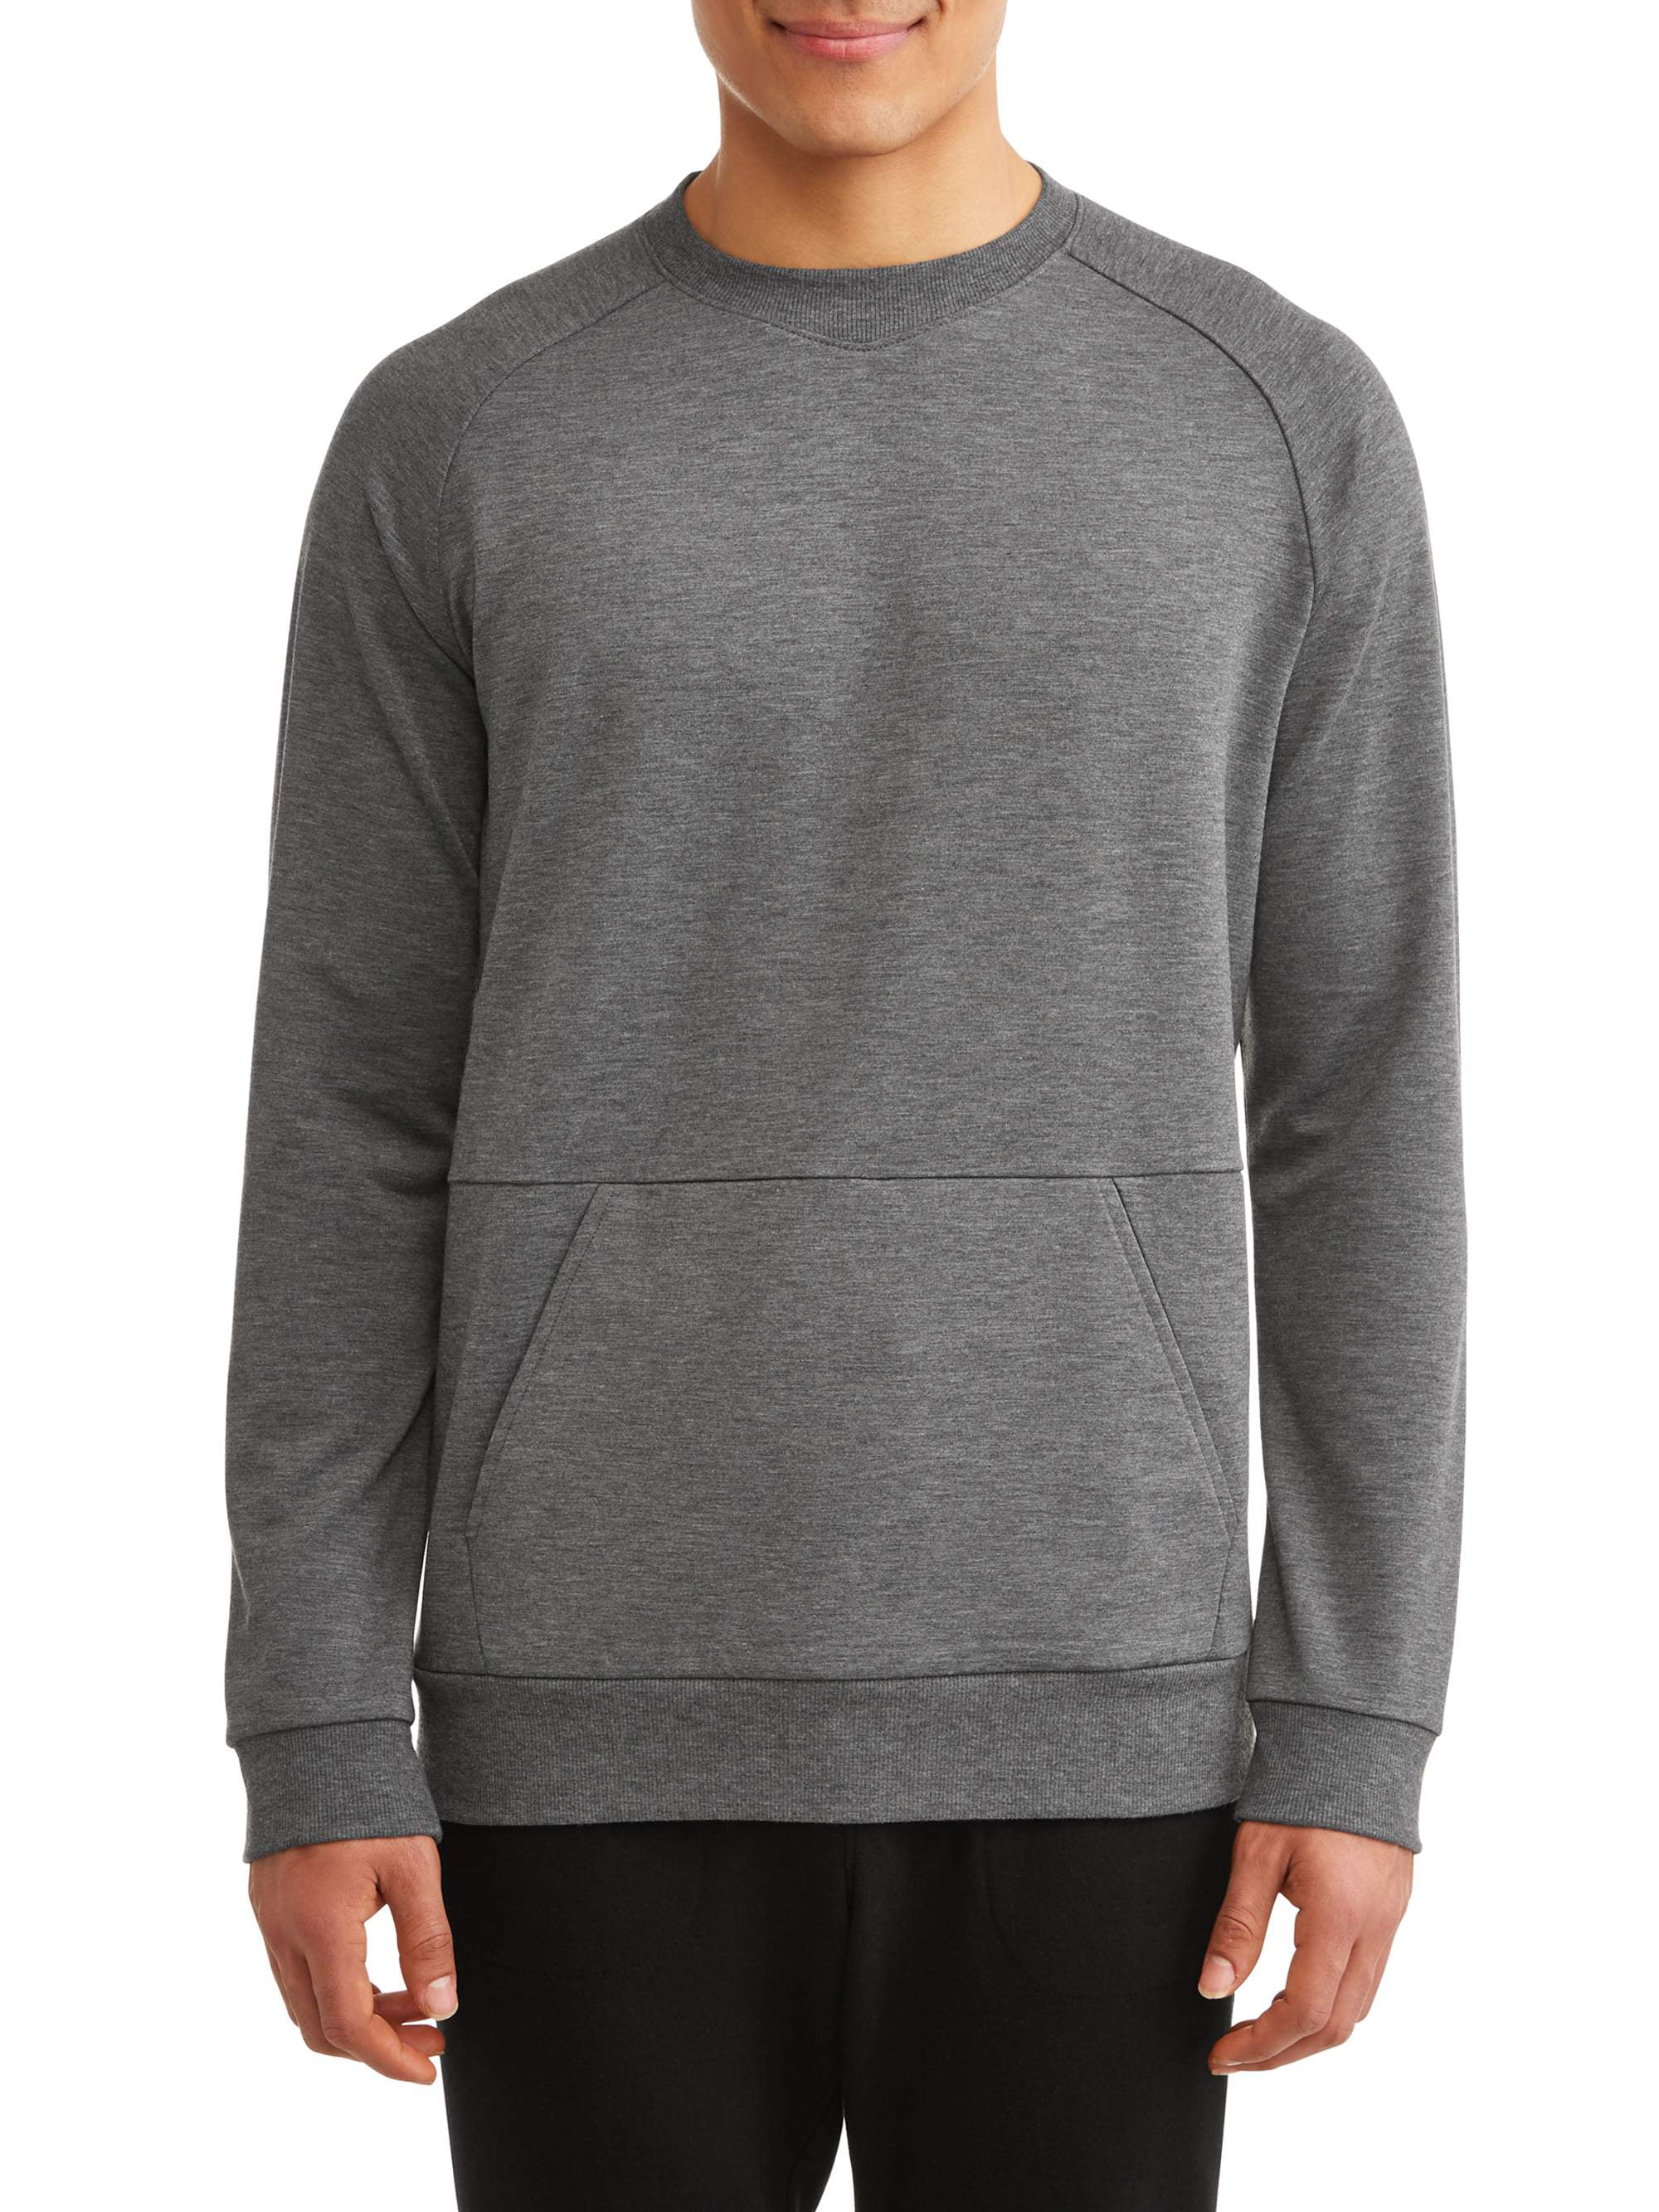 Athletic Works Big Men's Sweatshirt - Walmart.com